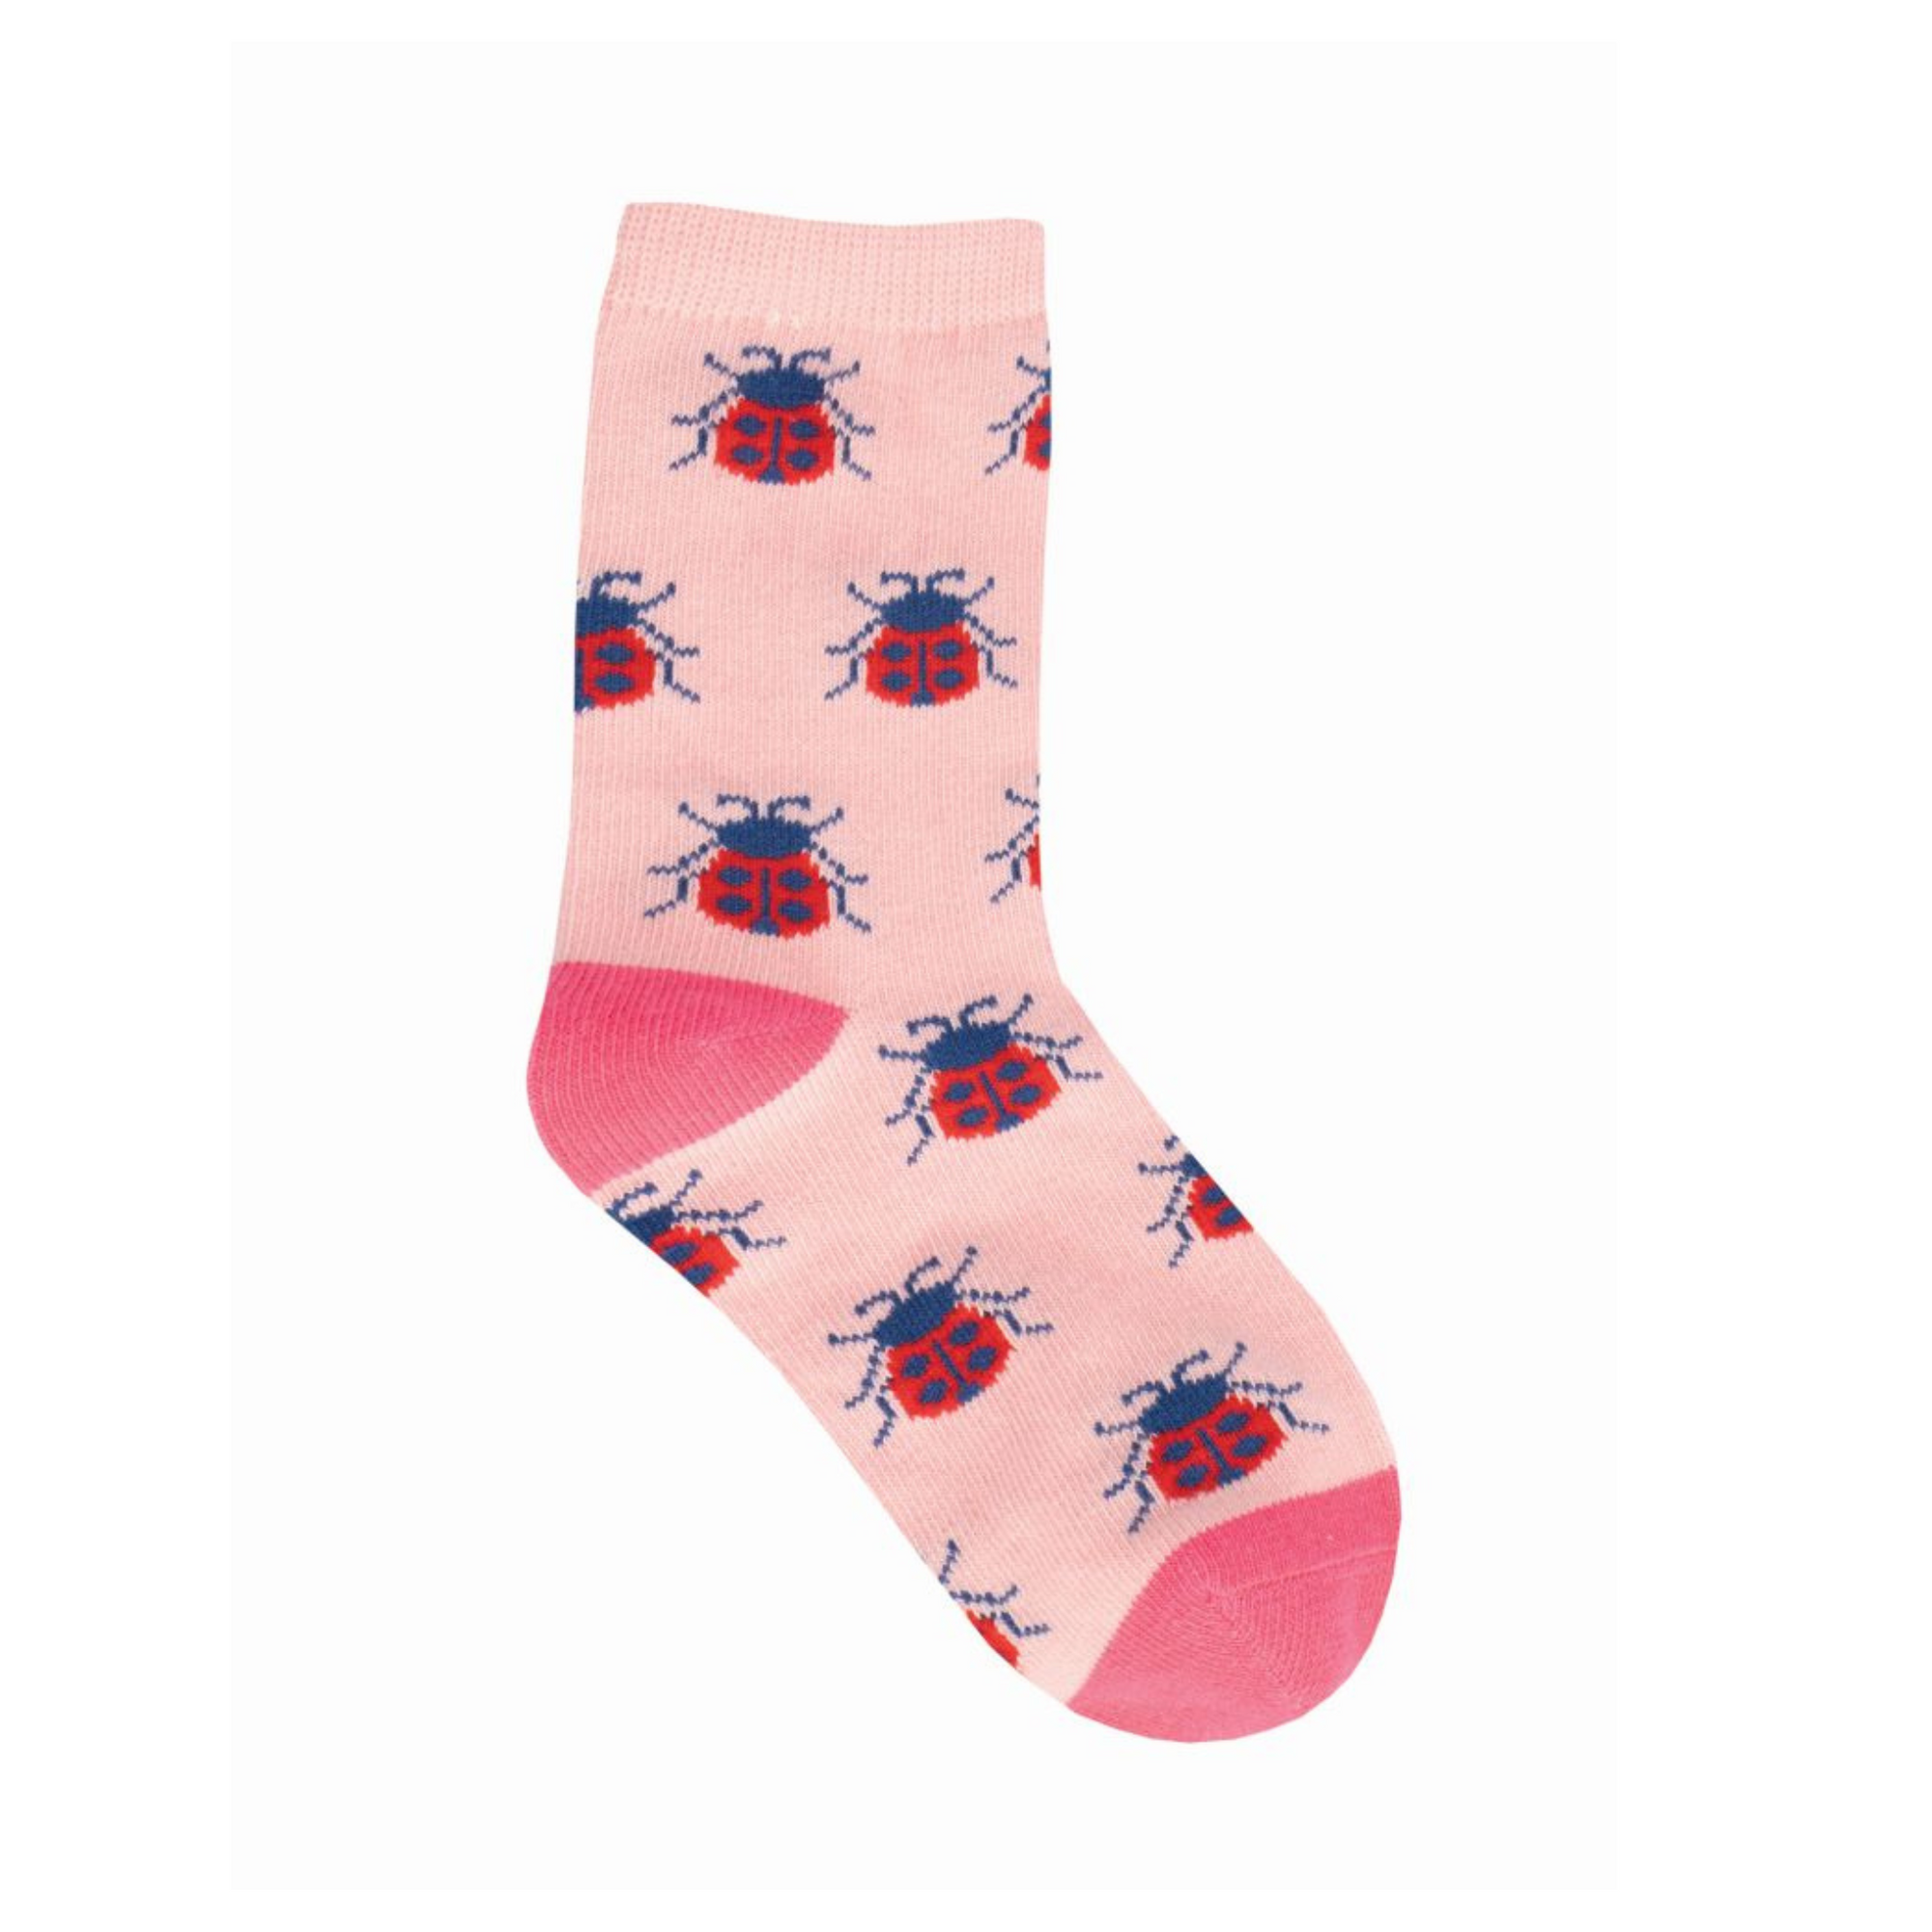 Lady Bug Socks - 2 - 4 yrs